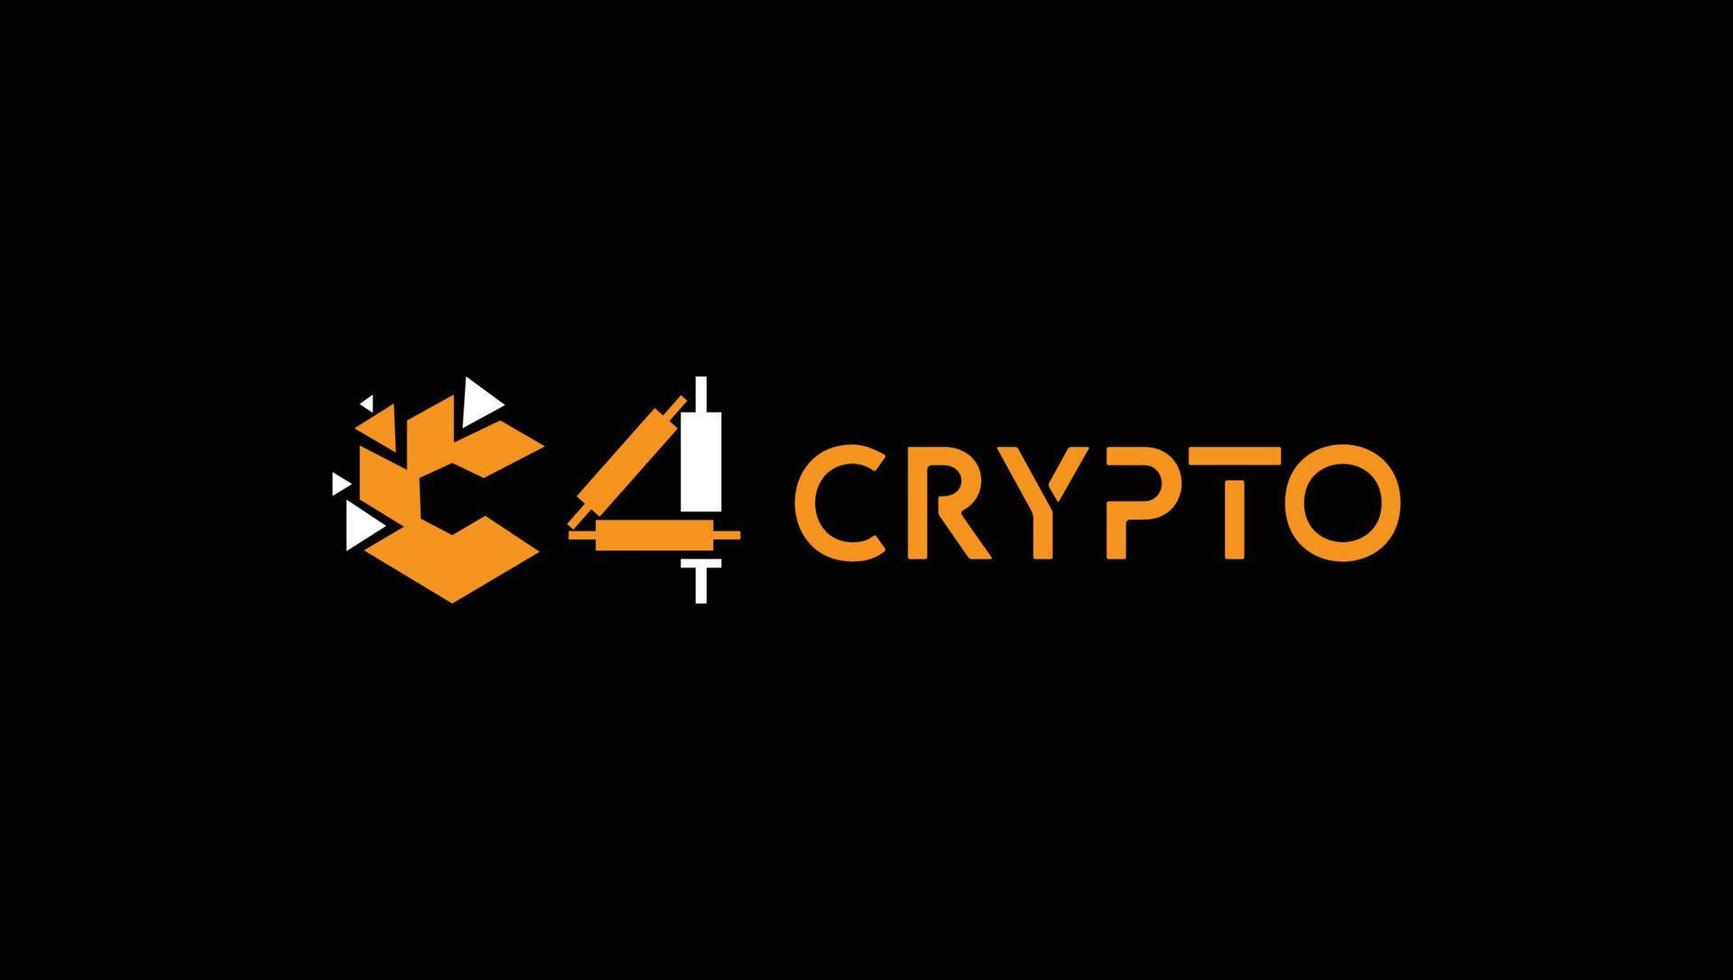 C4 Crypto Bitcoin NFT Forex Trading Logo Design Template vector